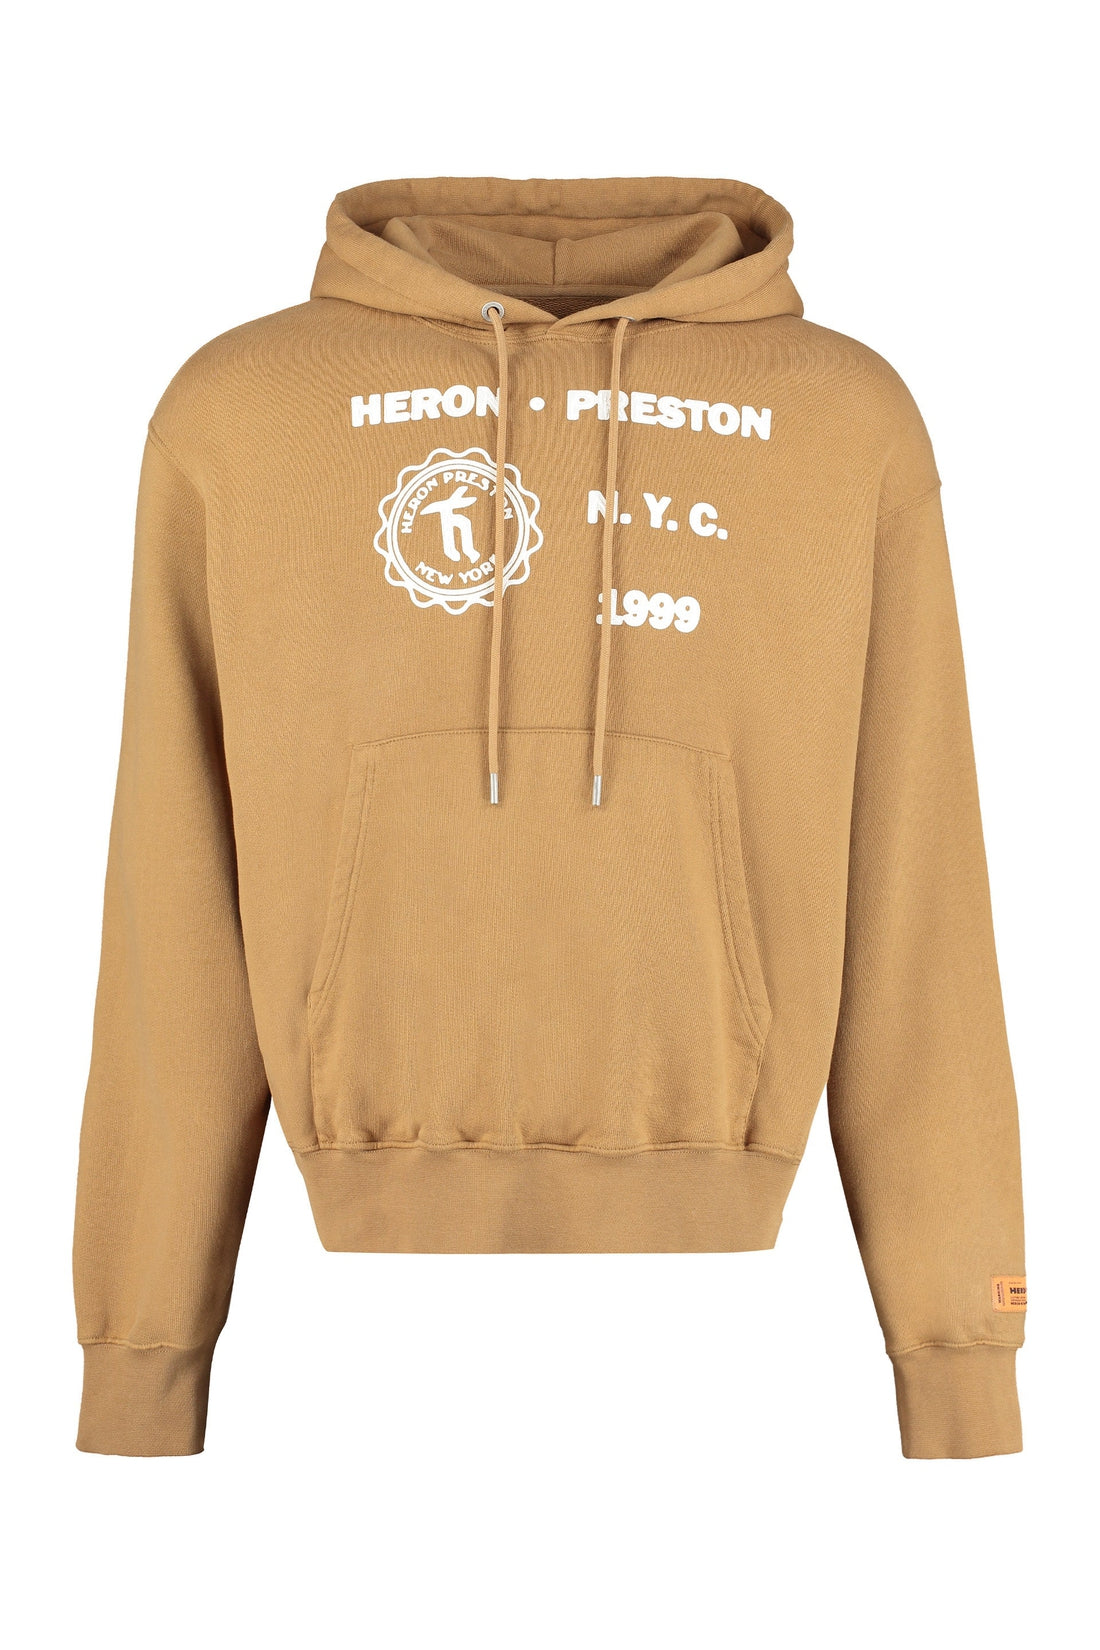 Heron Preston-OUTLET-SALE-Cotton hoodie-ARCHIVIST